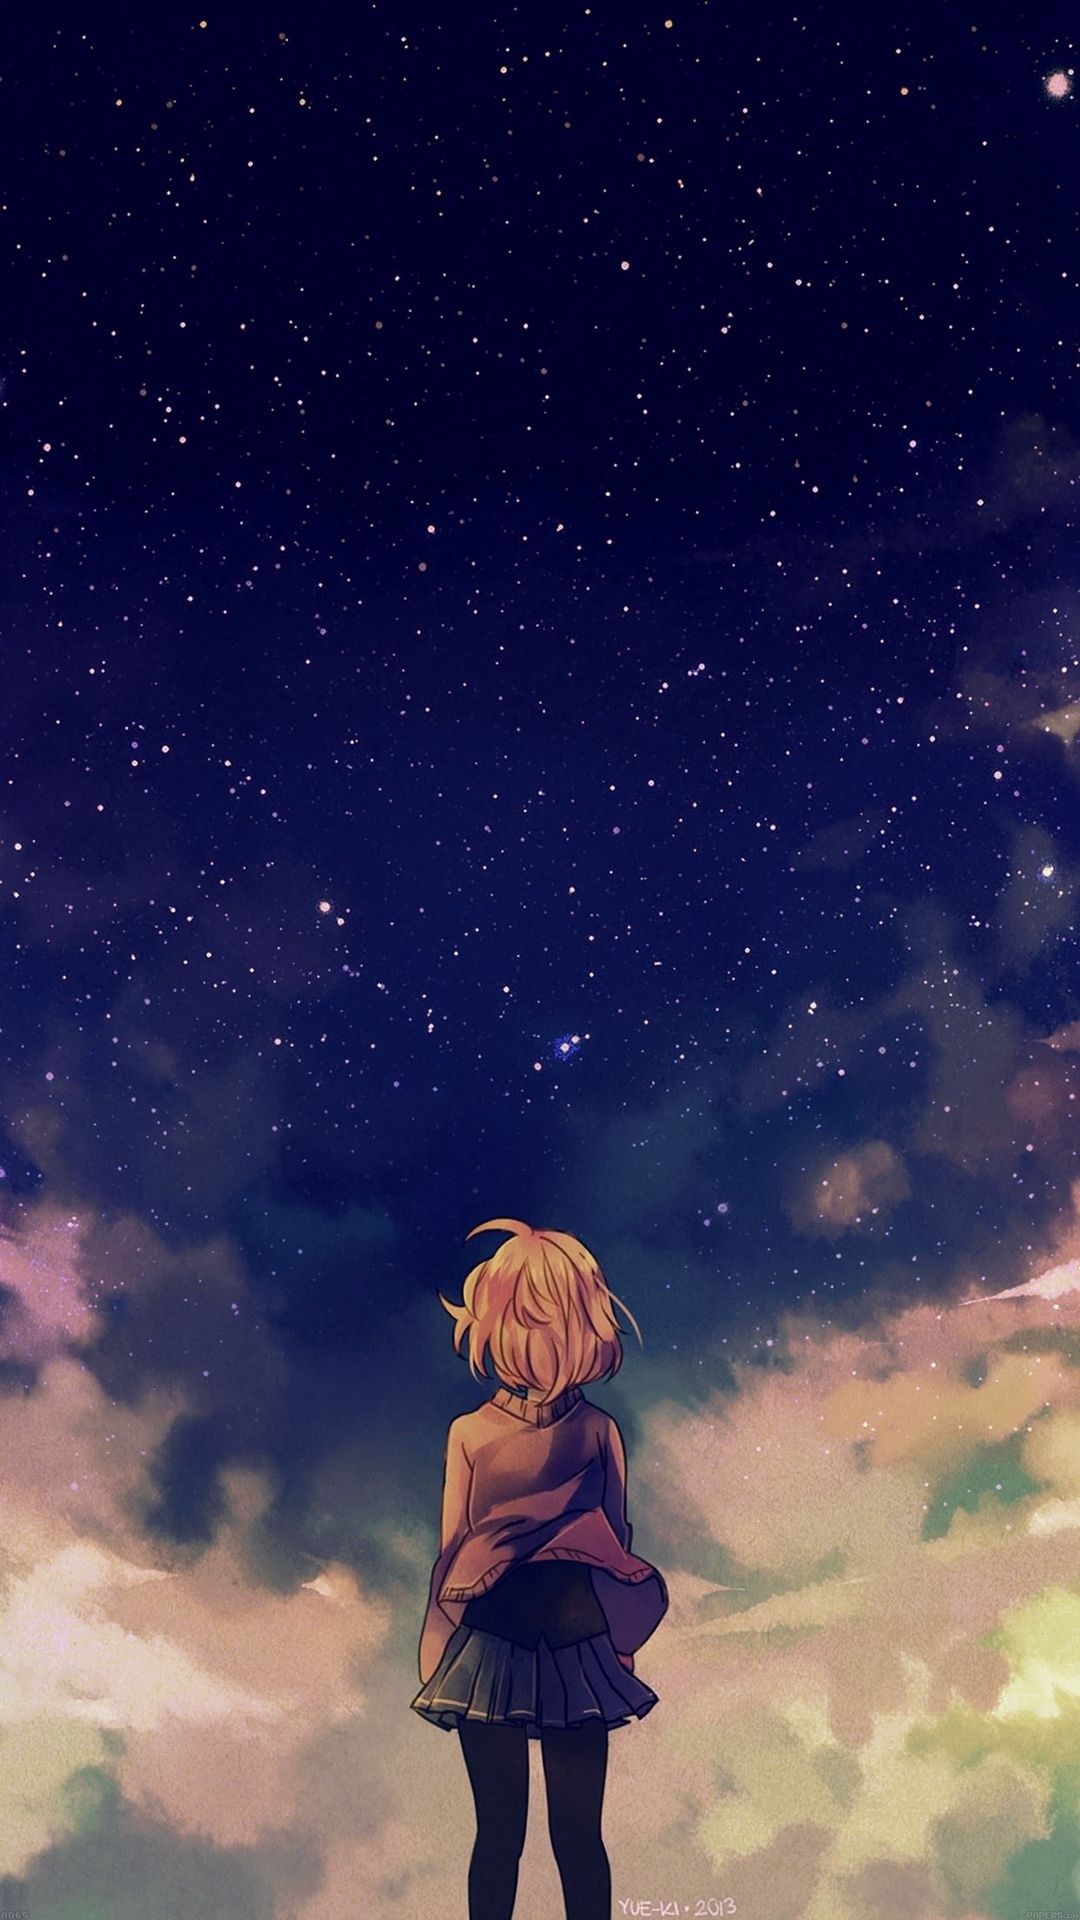 Anime Girl Sad Alone Wallpapers